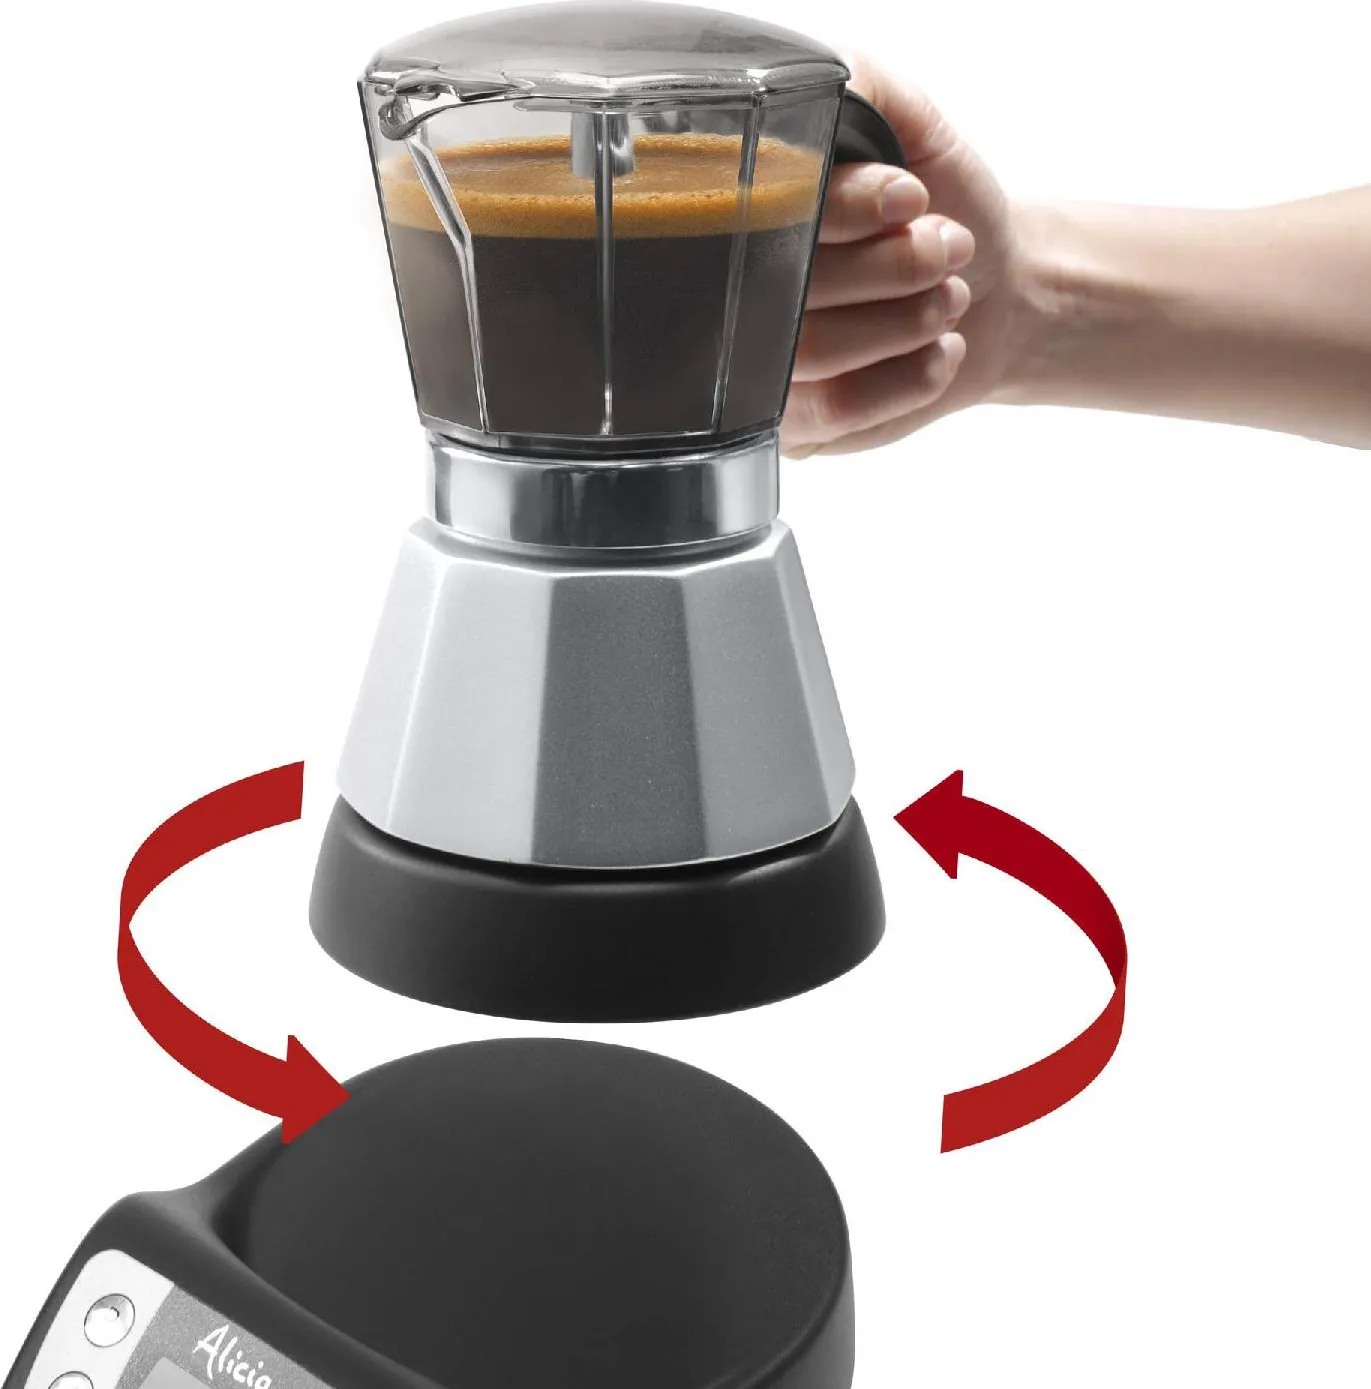 Fogola Casalinghi - E' sempre l'ora di un buon CAFFE' .. preparalo con la MOKA  elettrica Alicia De'Longhi ☕️ spegnimento automatico quando il caffè è  pronto e timer programmabile 24 ore. La